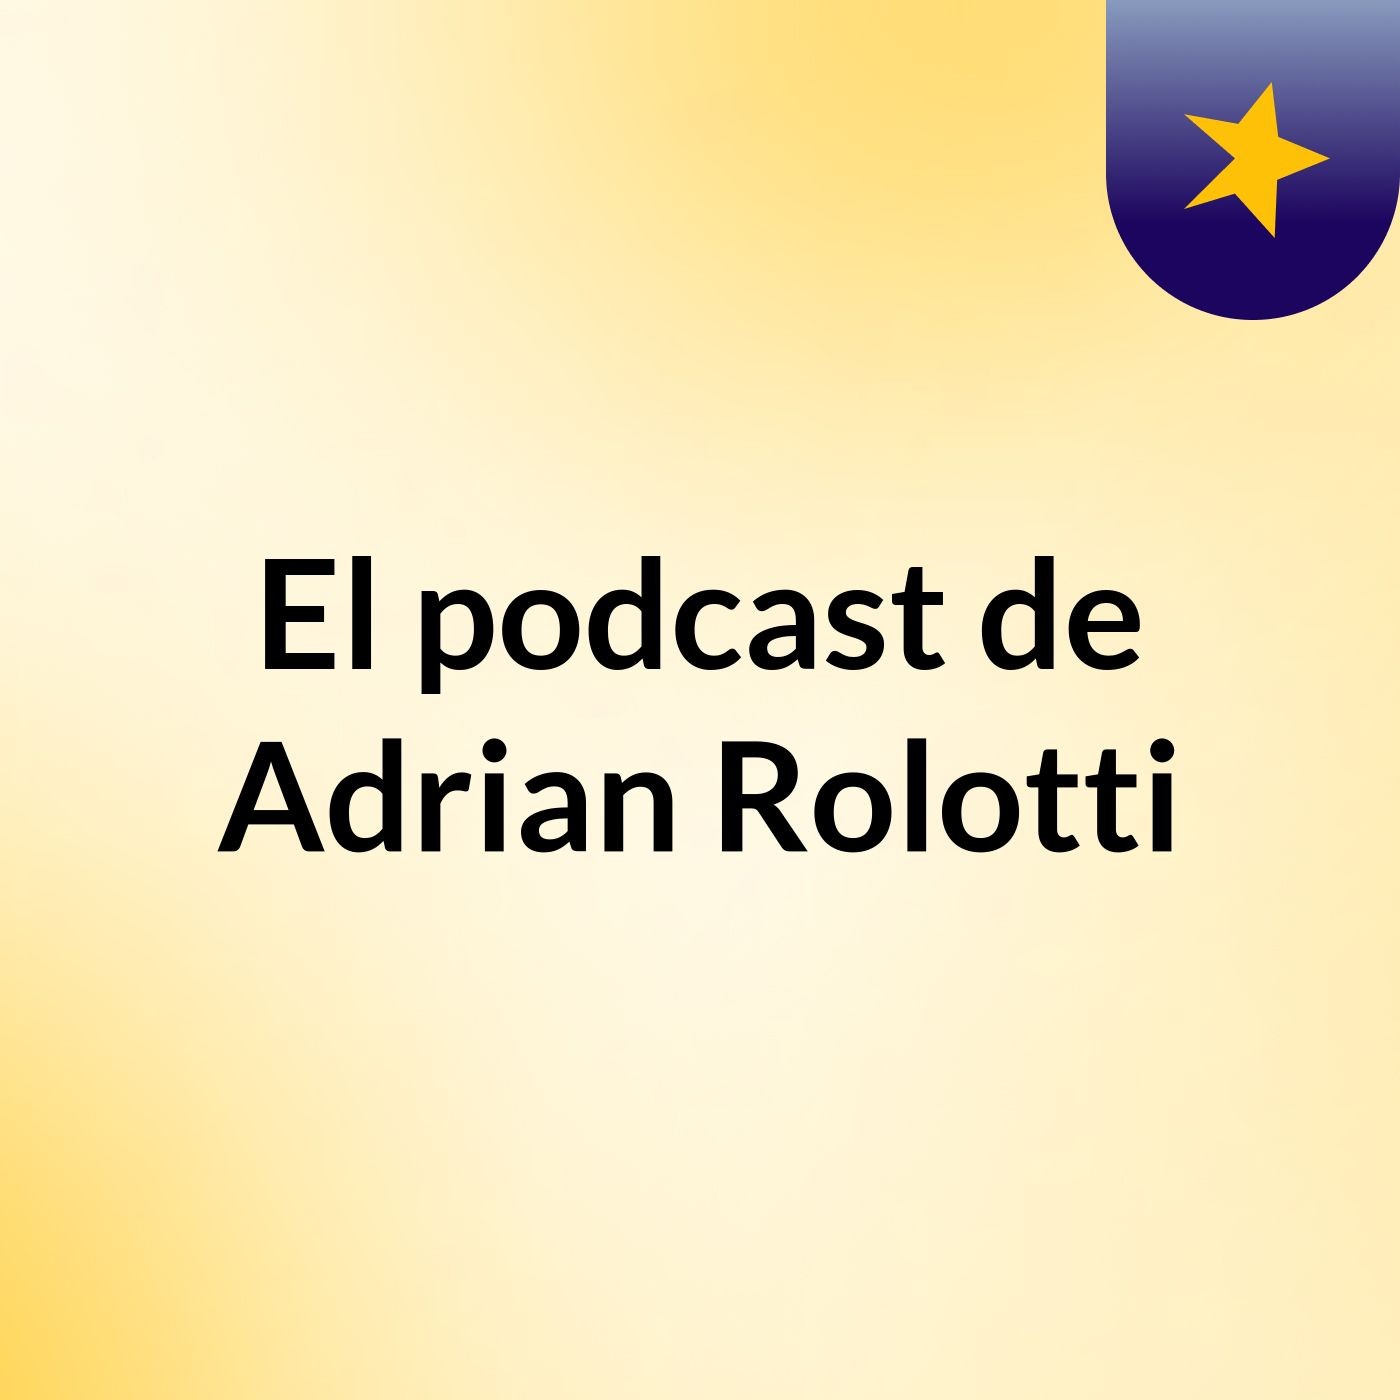 Episodio 4 - El podcast de Adrian Rolotti